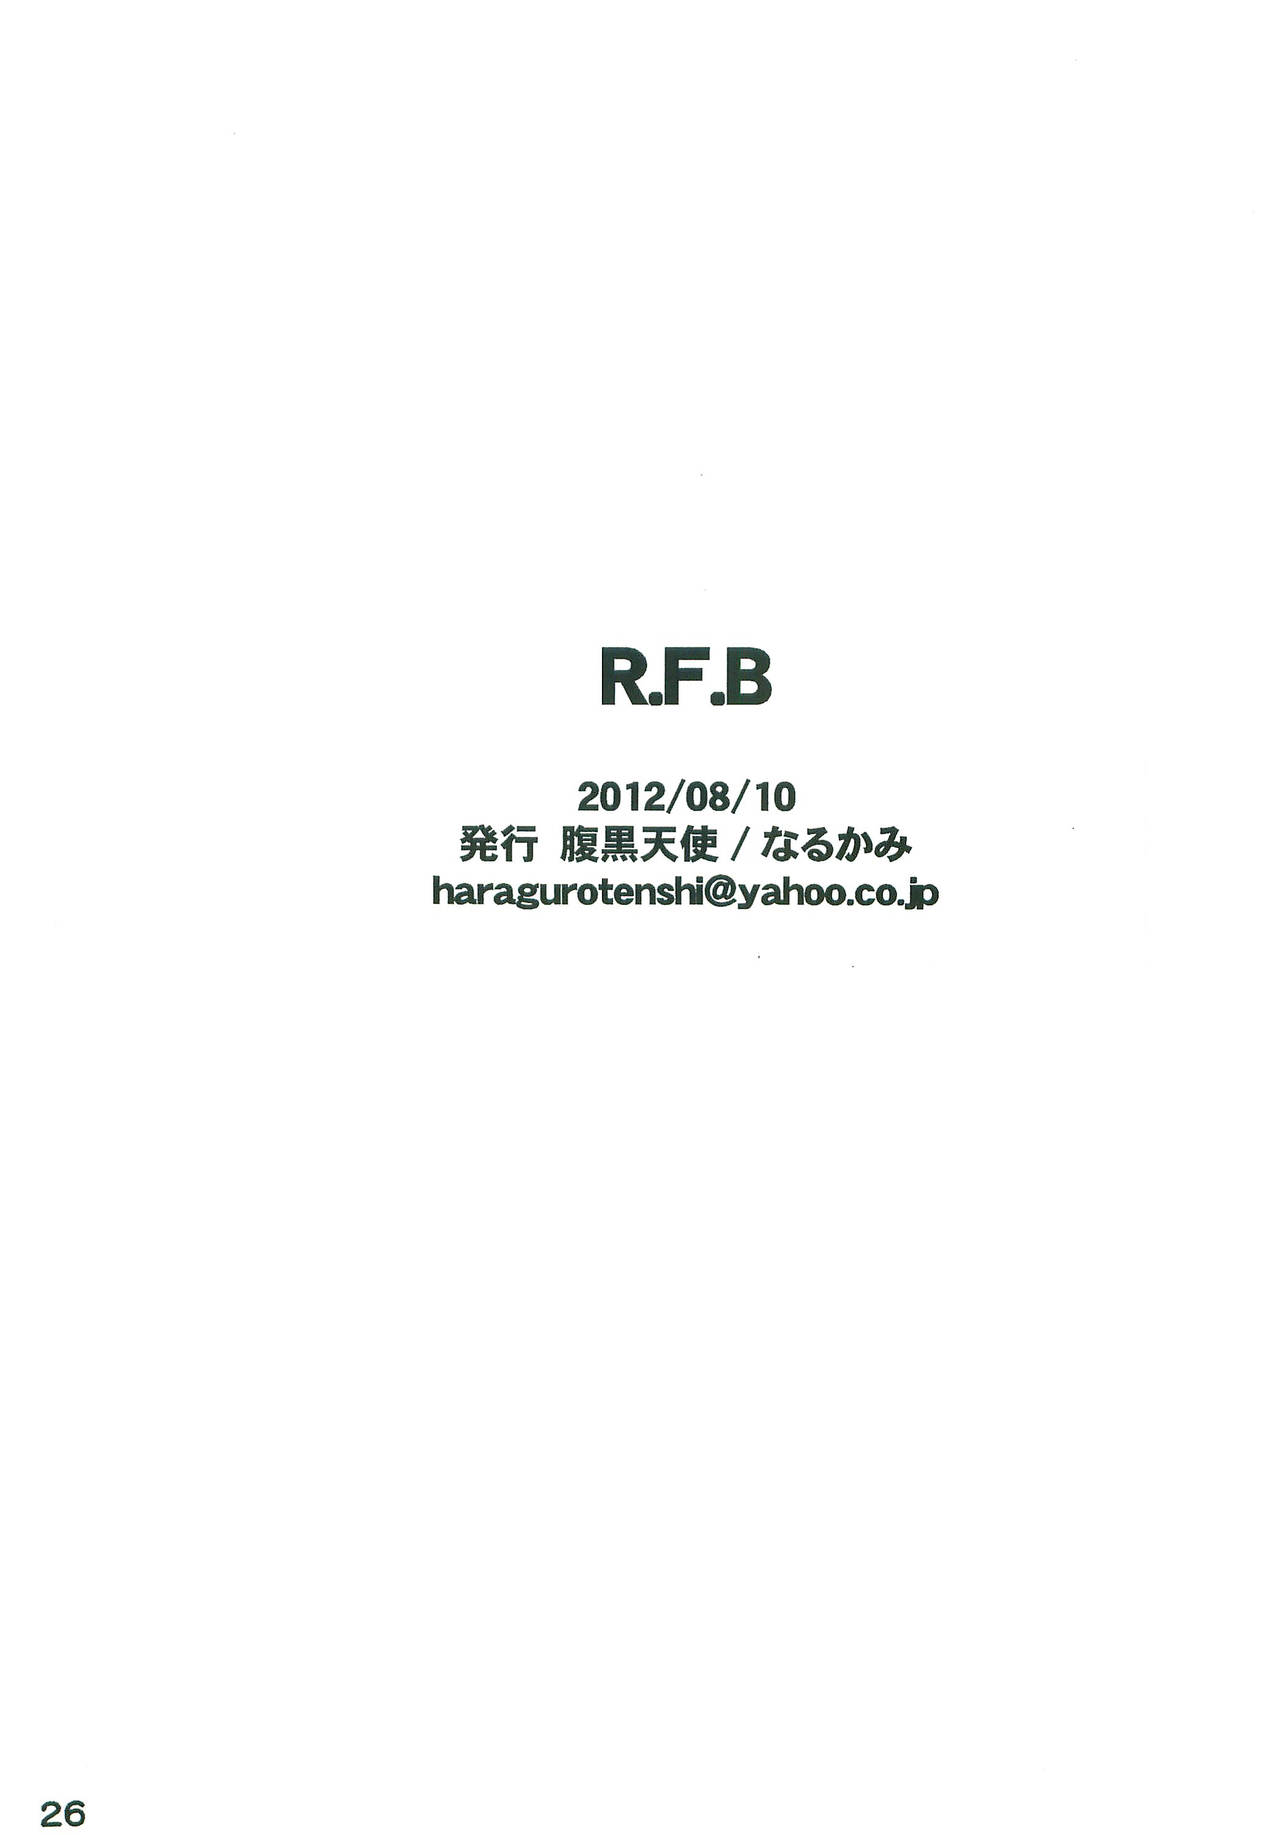 [腹黒天使 (なるかみ)] R.F.B (ロックマン)